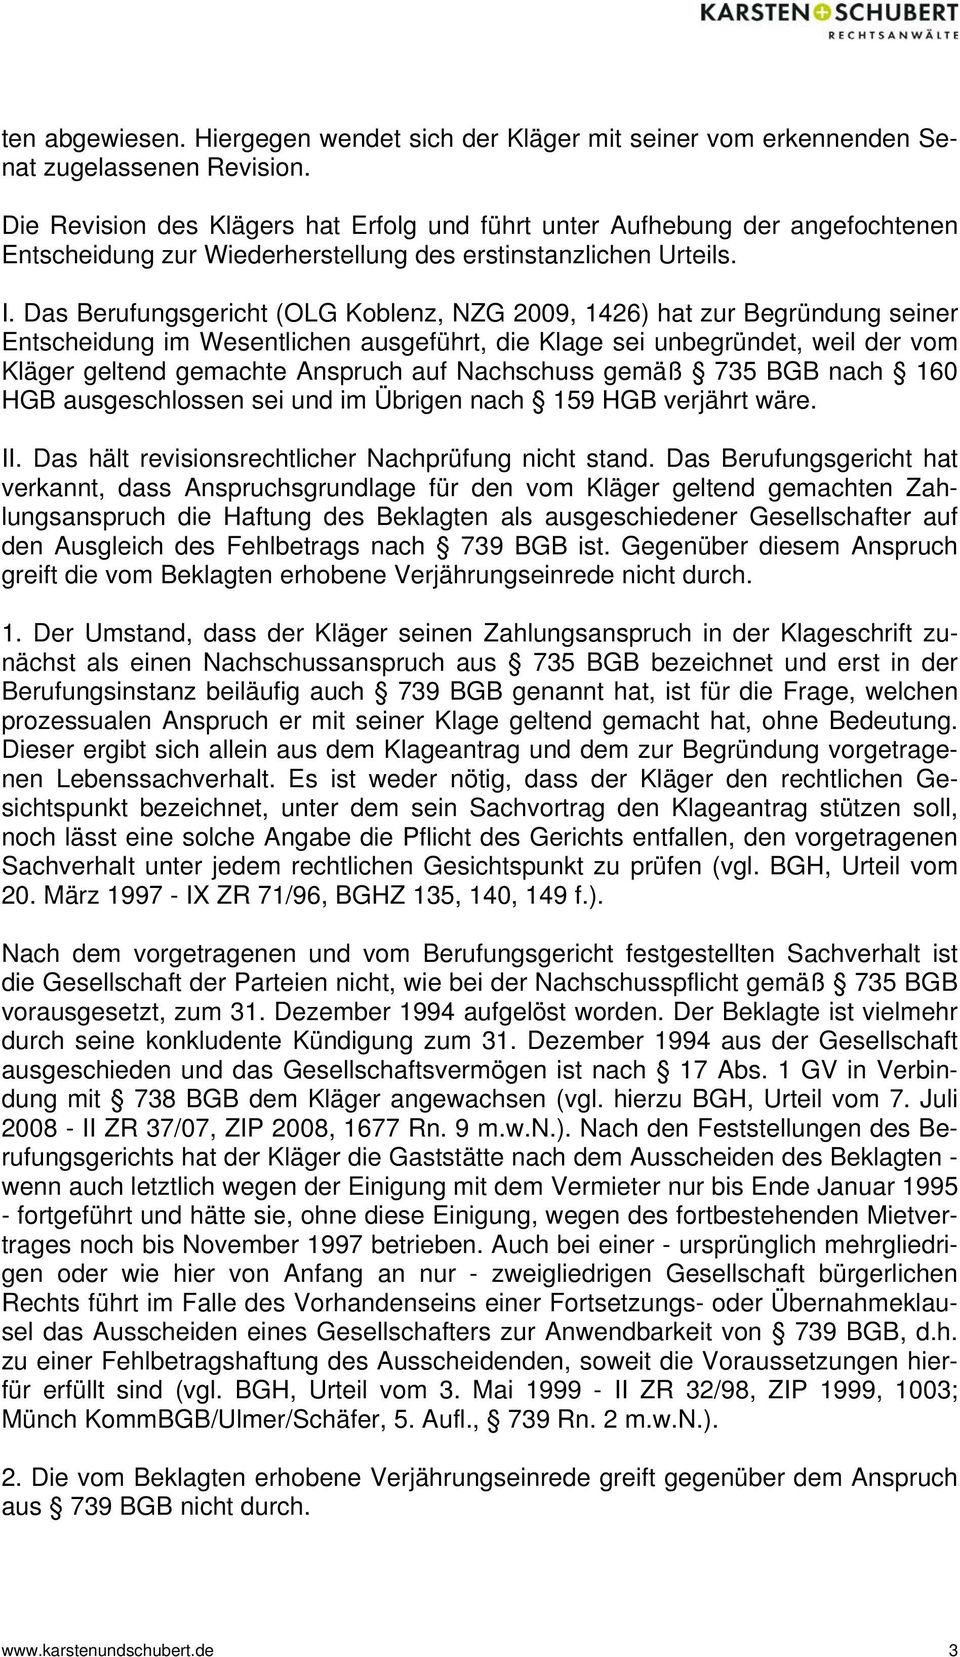 Das Berufungsgericht (OLG Koblenz, NZG 2009, 1426) hat zur Begründung seiner Entscheidung im Wesentlichen ausgeführt, die Klage sei unbegründet, weil der vom Kläger geltend gemachte Anspruch auf